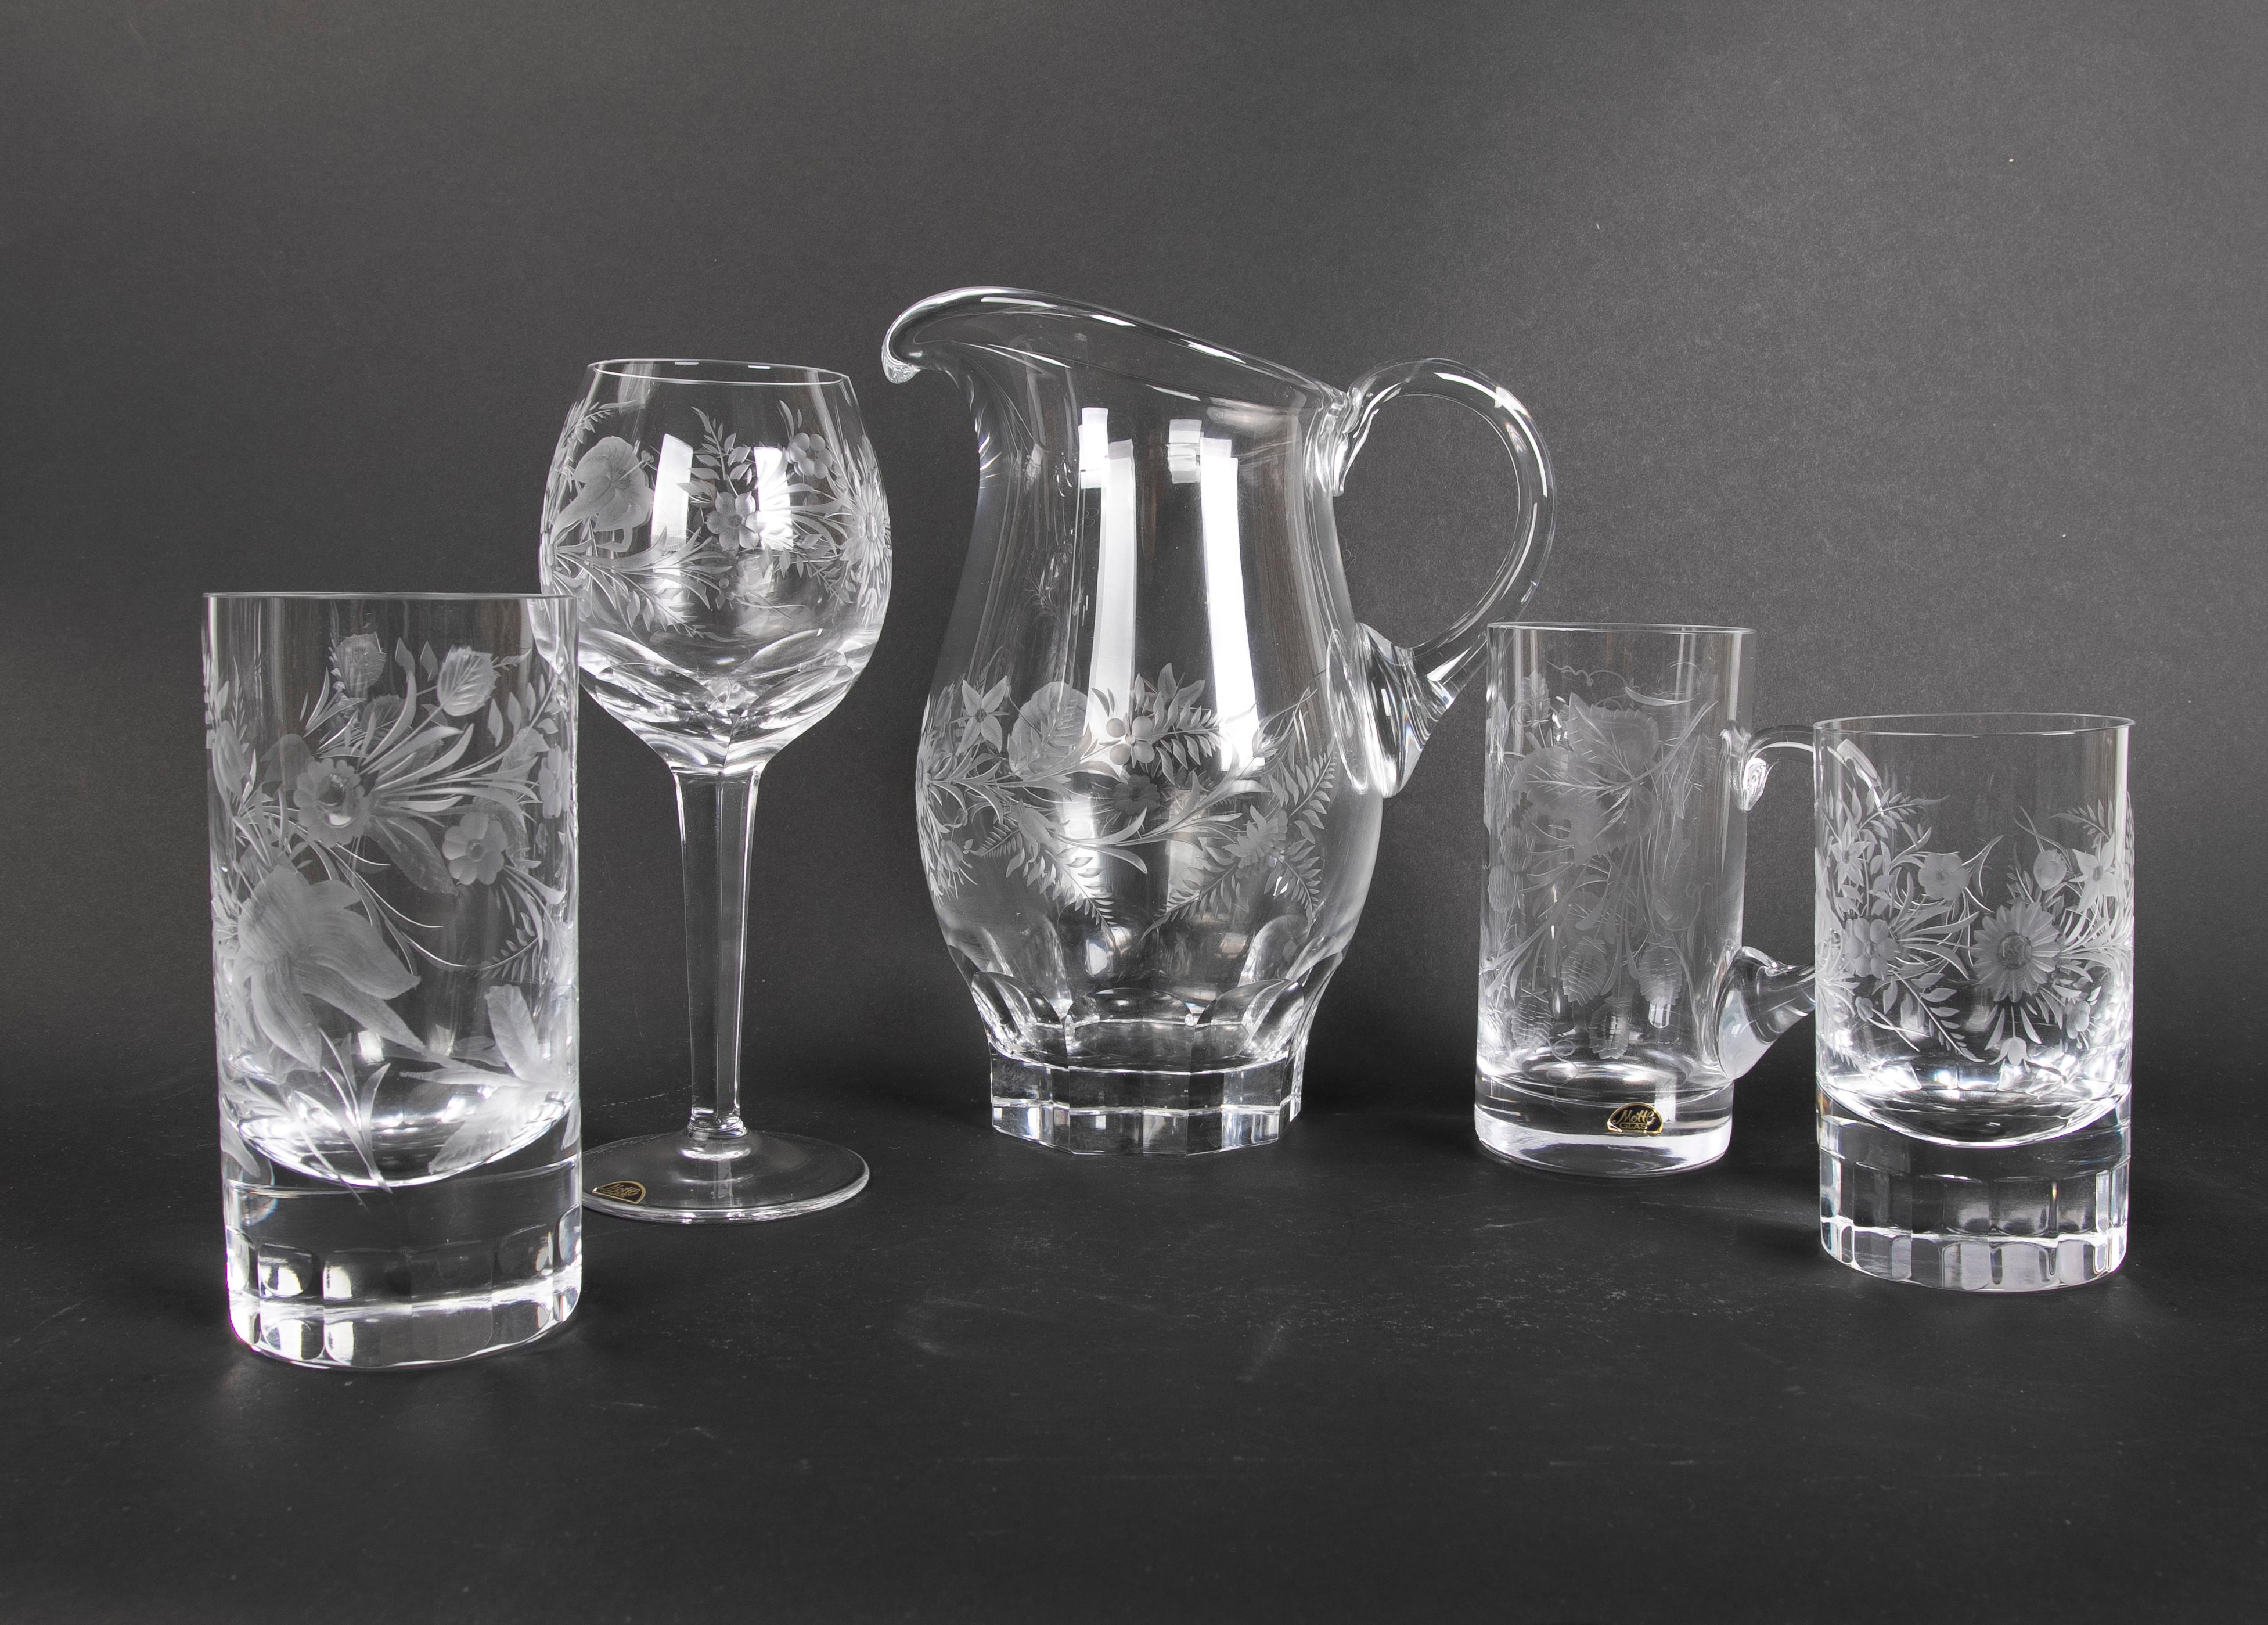 Glaswaren Zweiundsiebzig Stücke aus geschliffenem böhmischem Kristall
Die Mengen sind wie folgt:
- 1 Krug Wasser
- 29 Gläser
- 16 Krüge
- 11 Mittlere Gläser
- 18 Kleine Gläser.
   